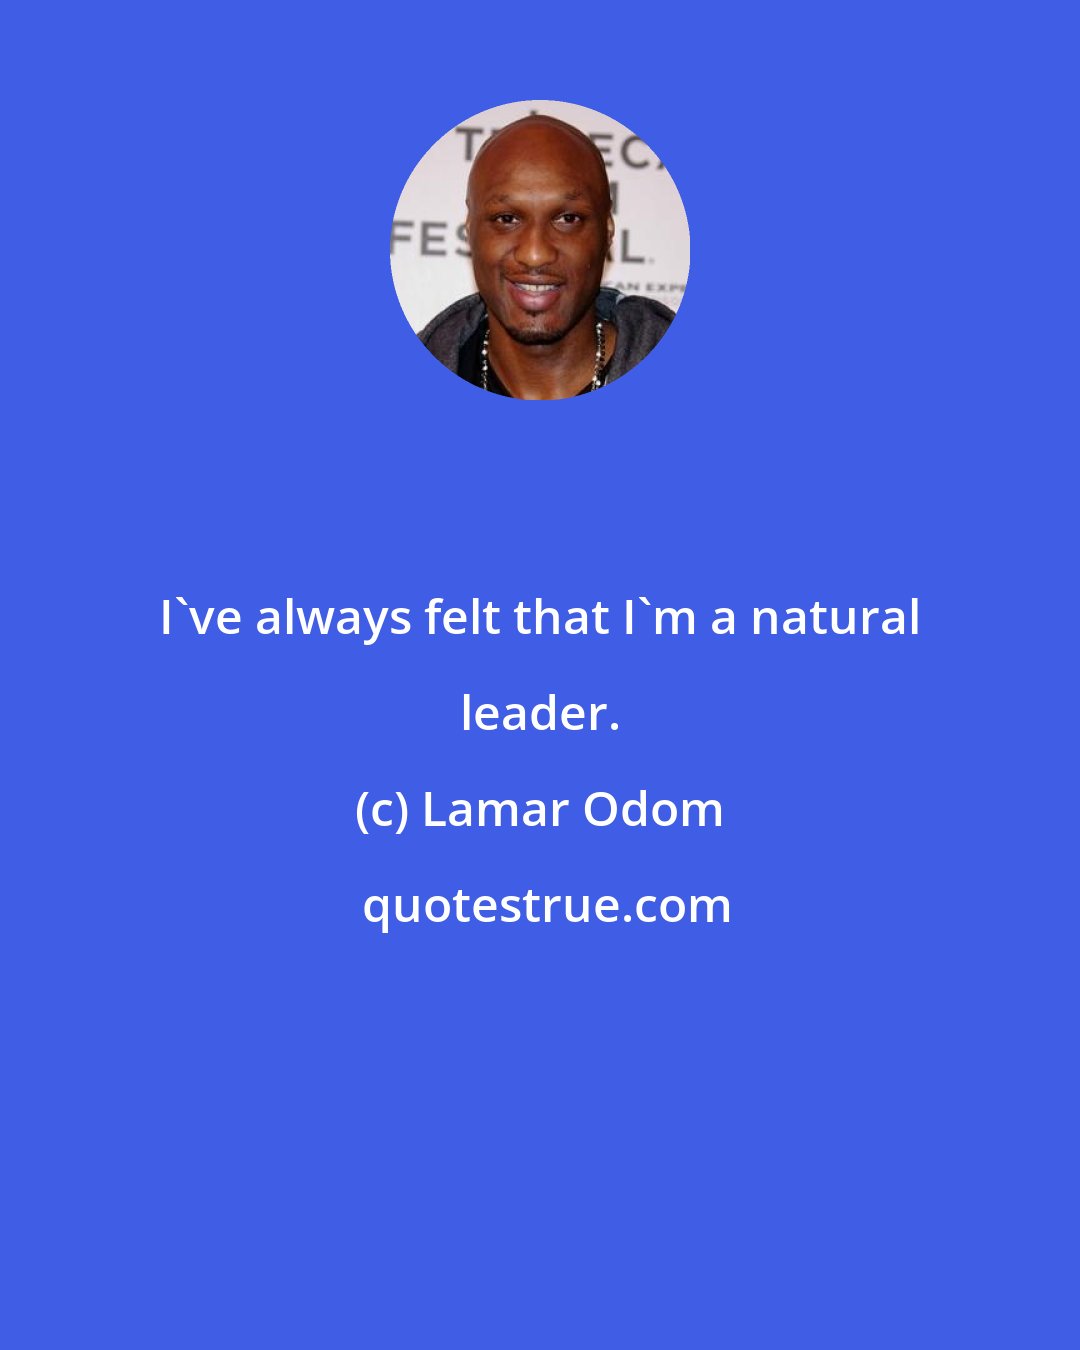 Lamar Odom: I've always felt that I'm a natural leader.